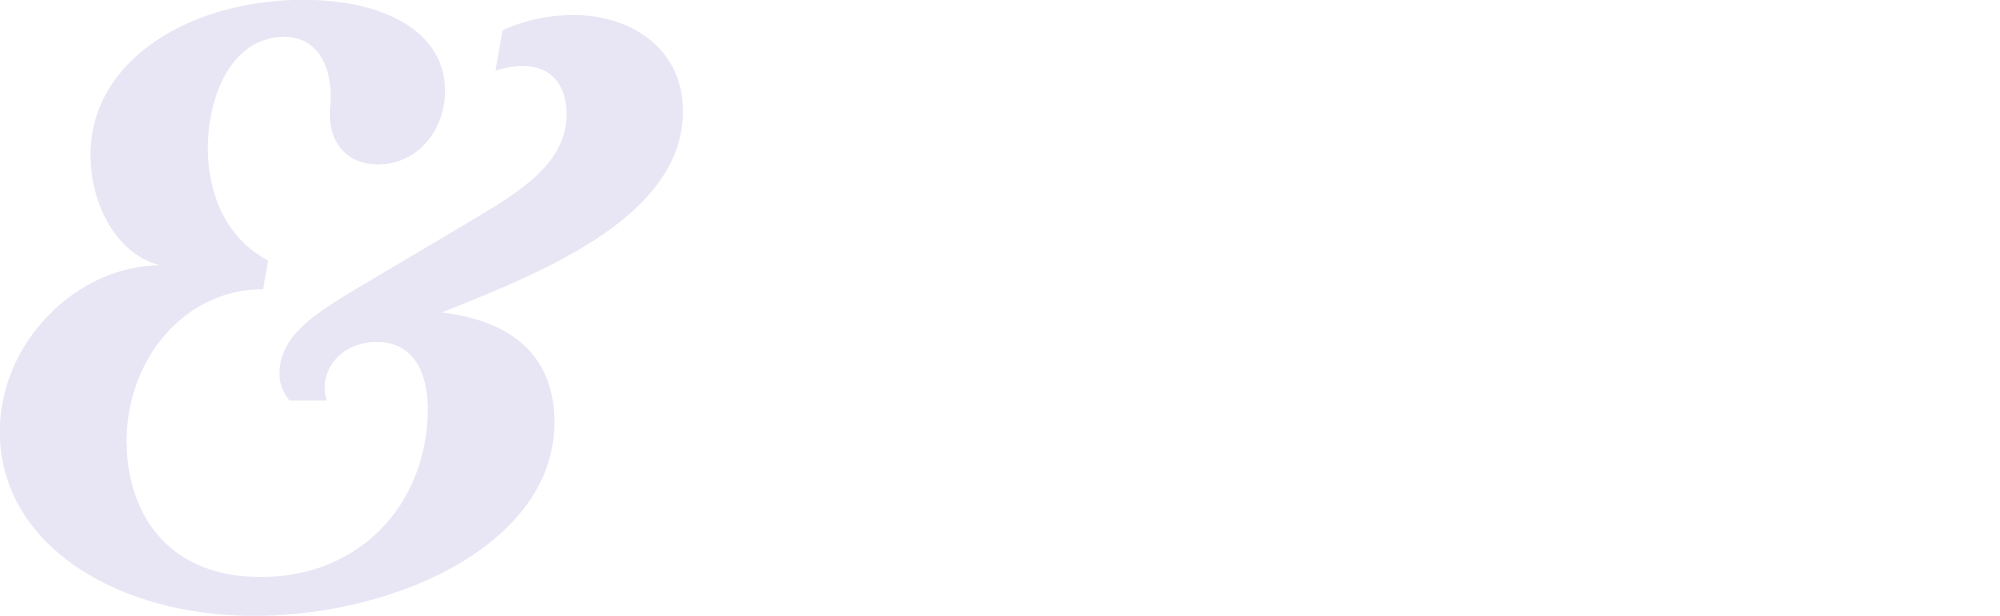 Crime Office logo